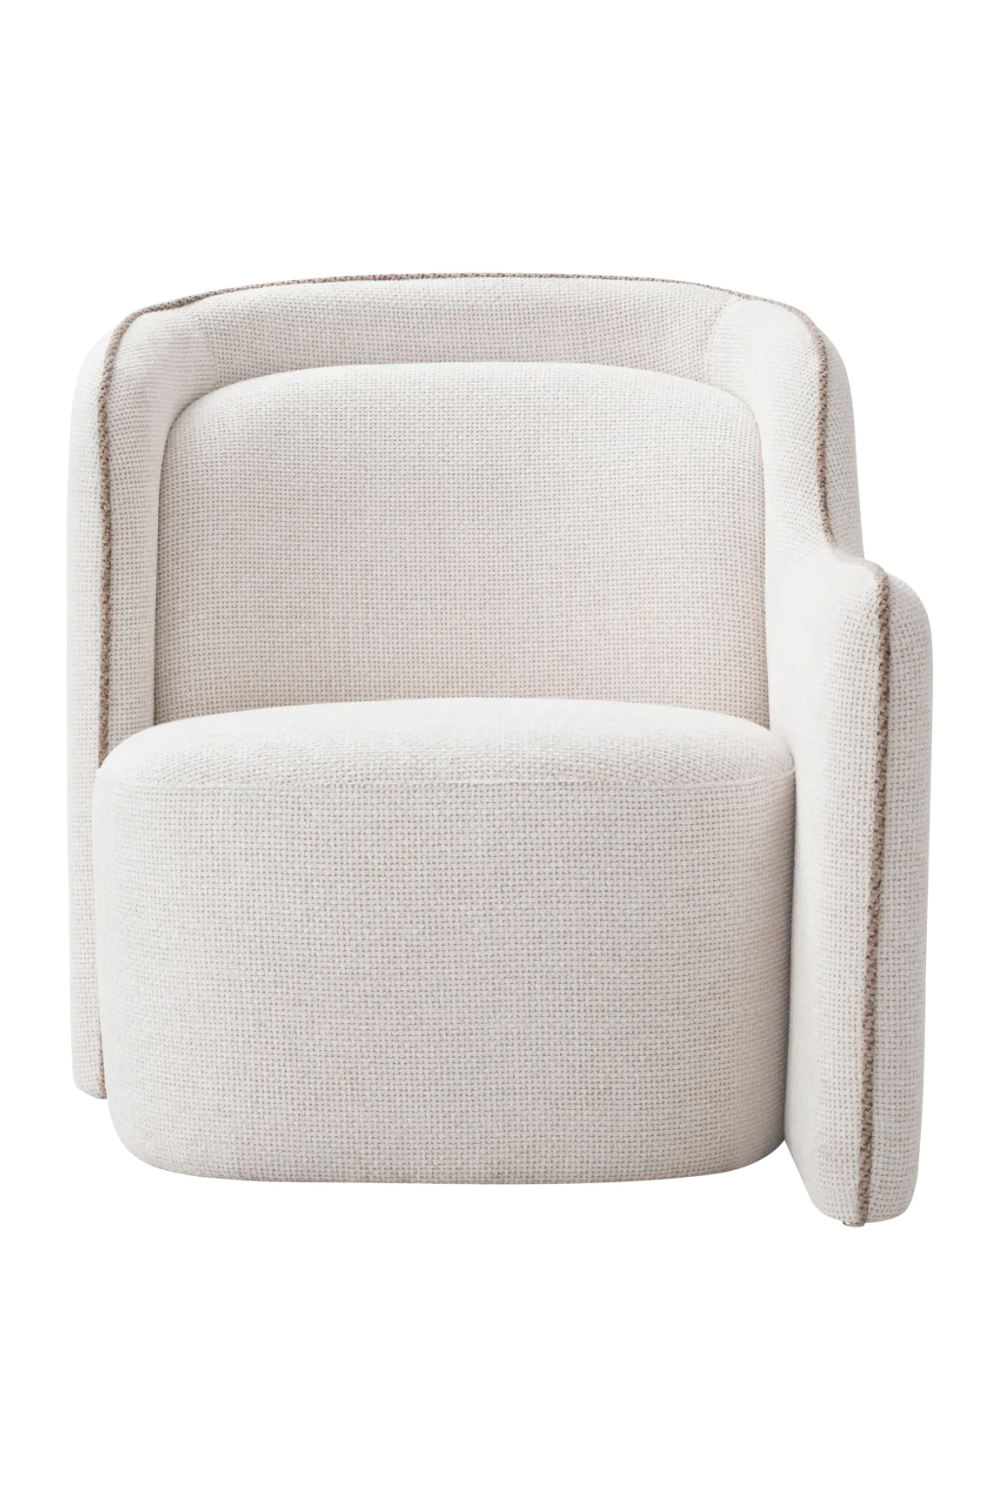 White Modular Accent Chair | Eichholtz Barrier | Oroa.com